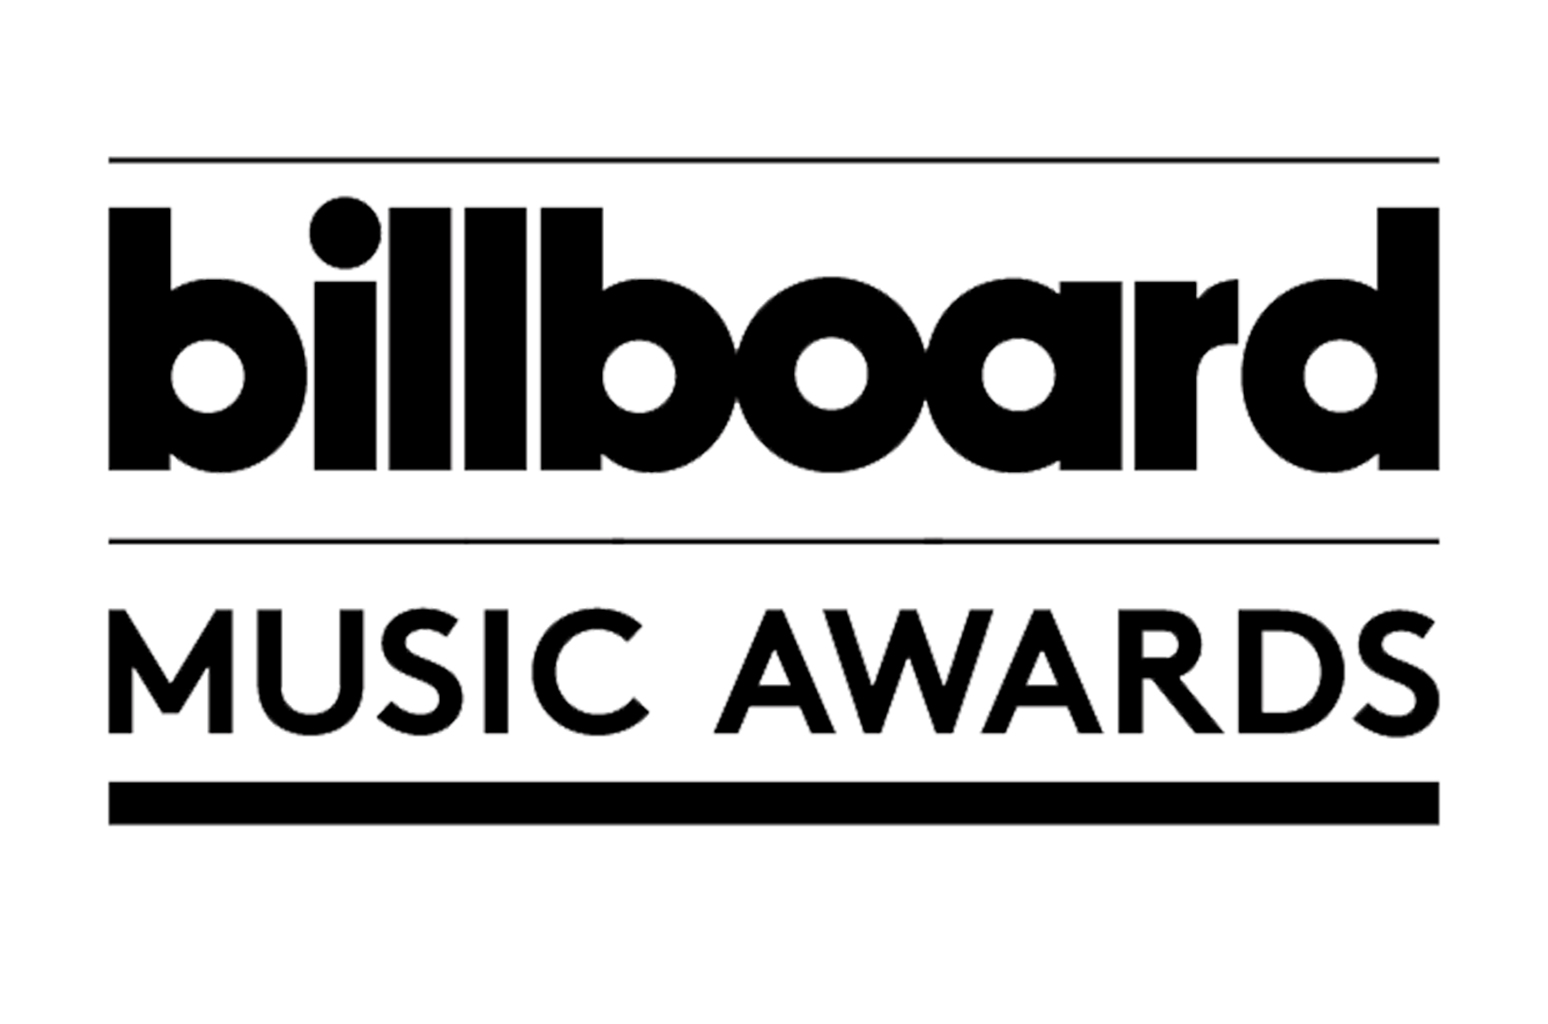 Tất Cả Nghệ Sĩ Đoạt Giải Tại Billboard Music Awards 2018 [Danh Sách]